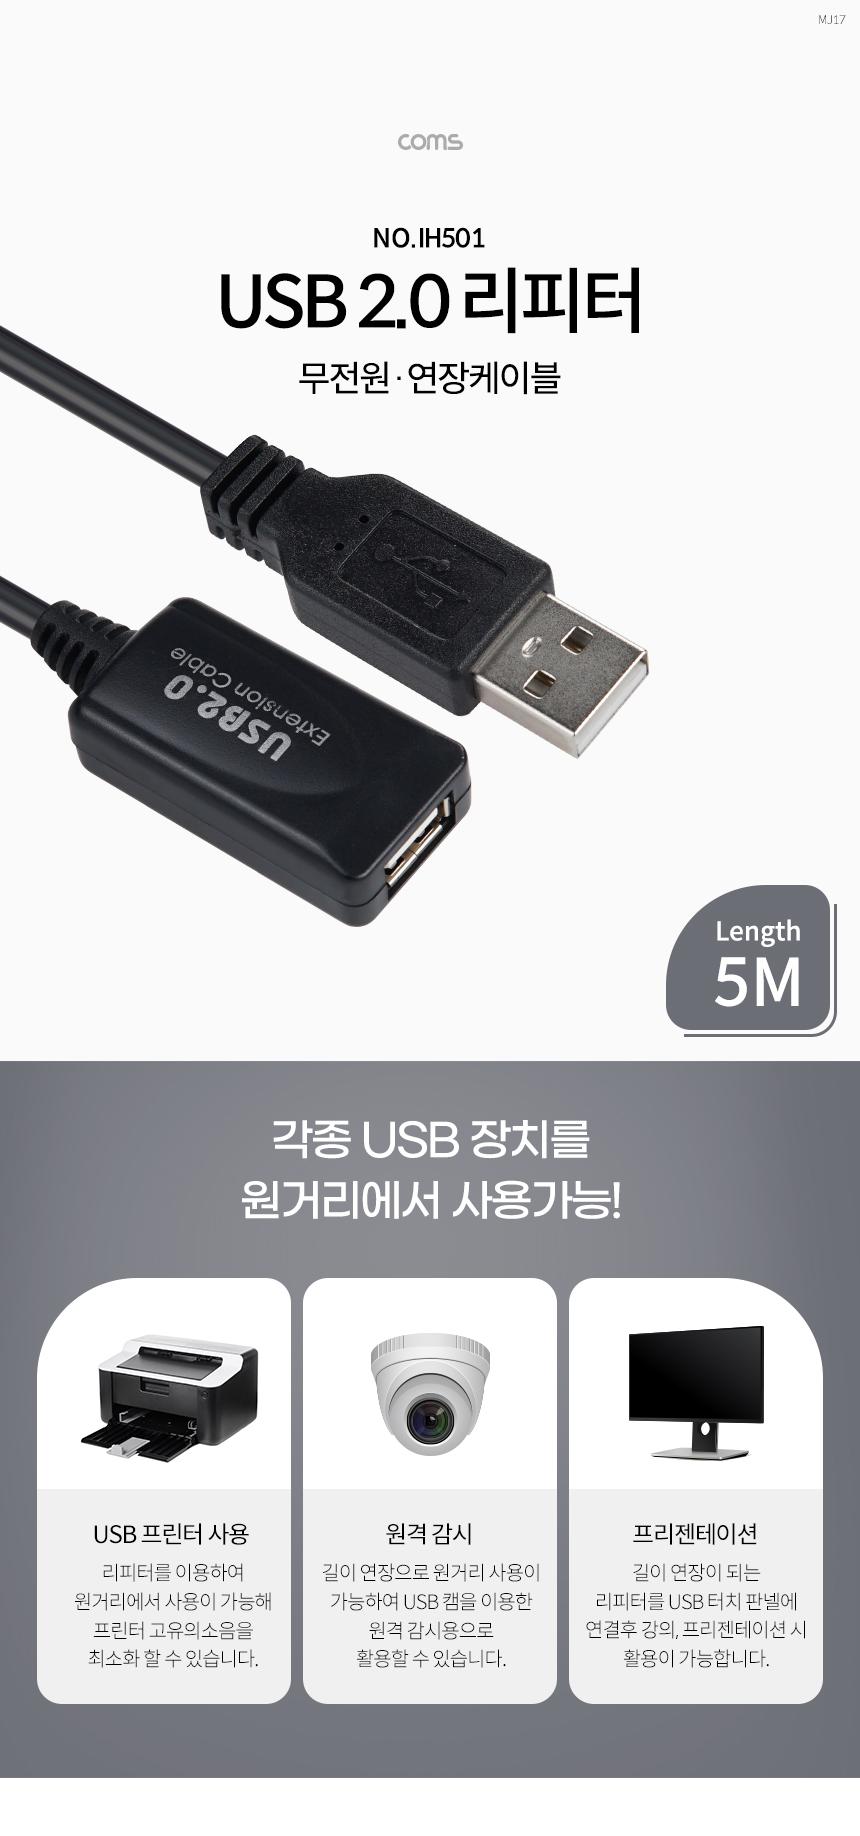 Coms USB 2.0 ()  ̺ Active Extension Cable 5M  PC ǻ͸ 帮 Ʈũ ̺ ̺ PC̺ ǻ̺ ̺